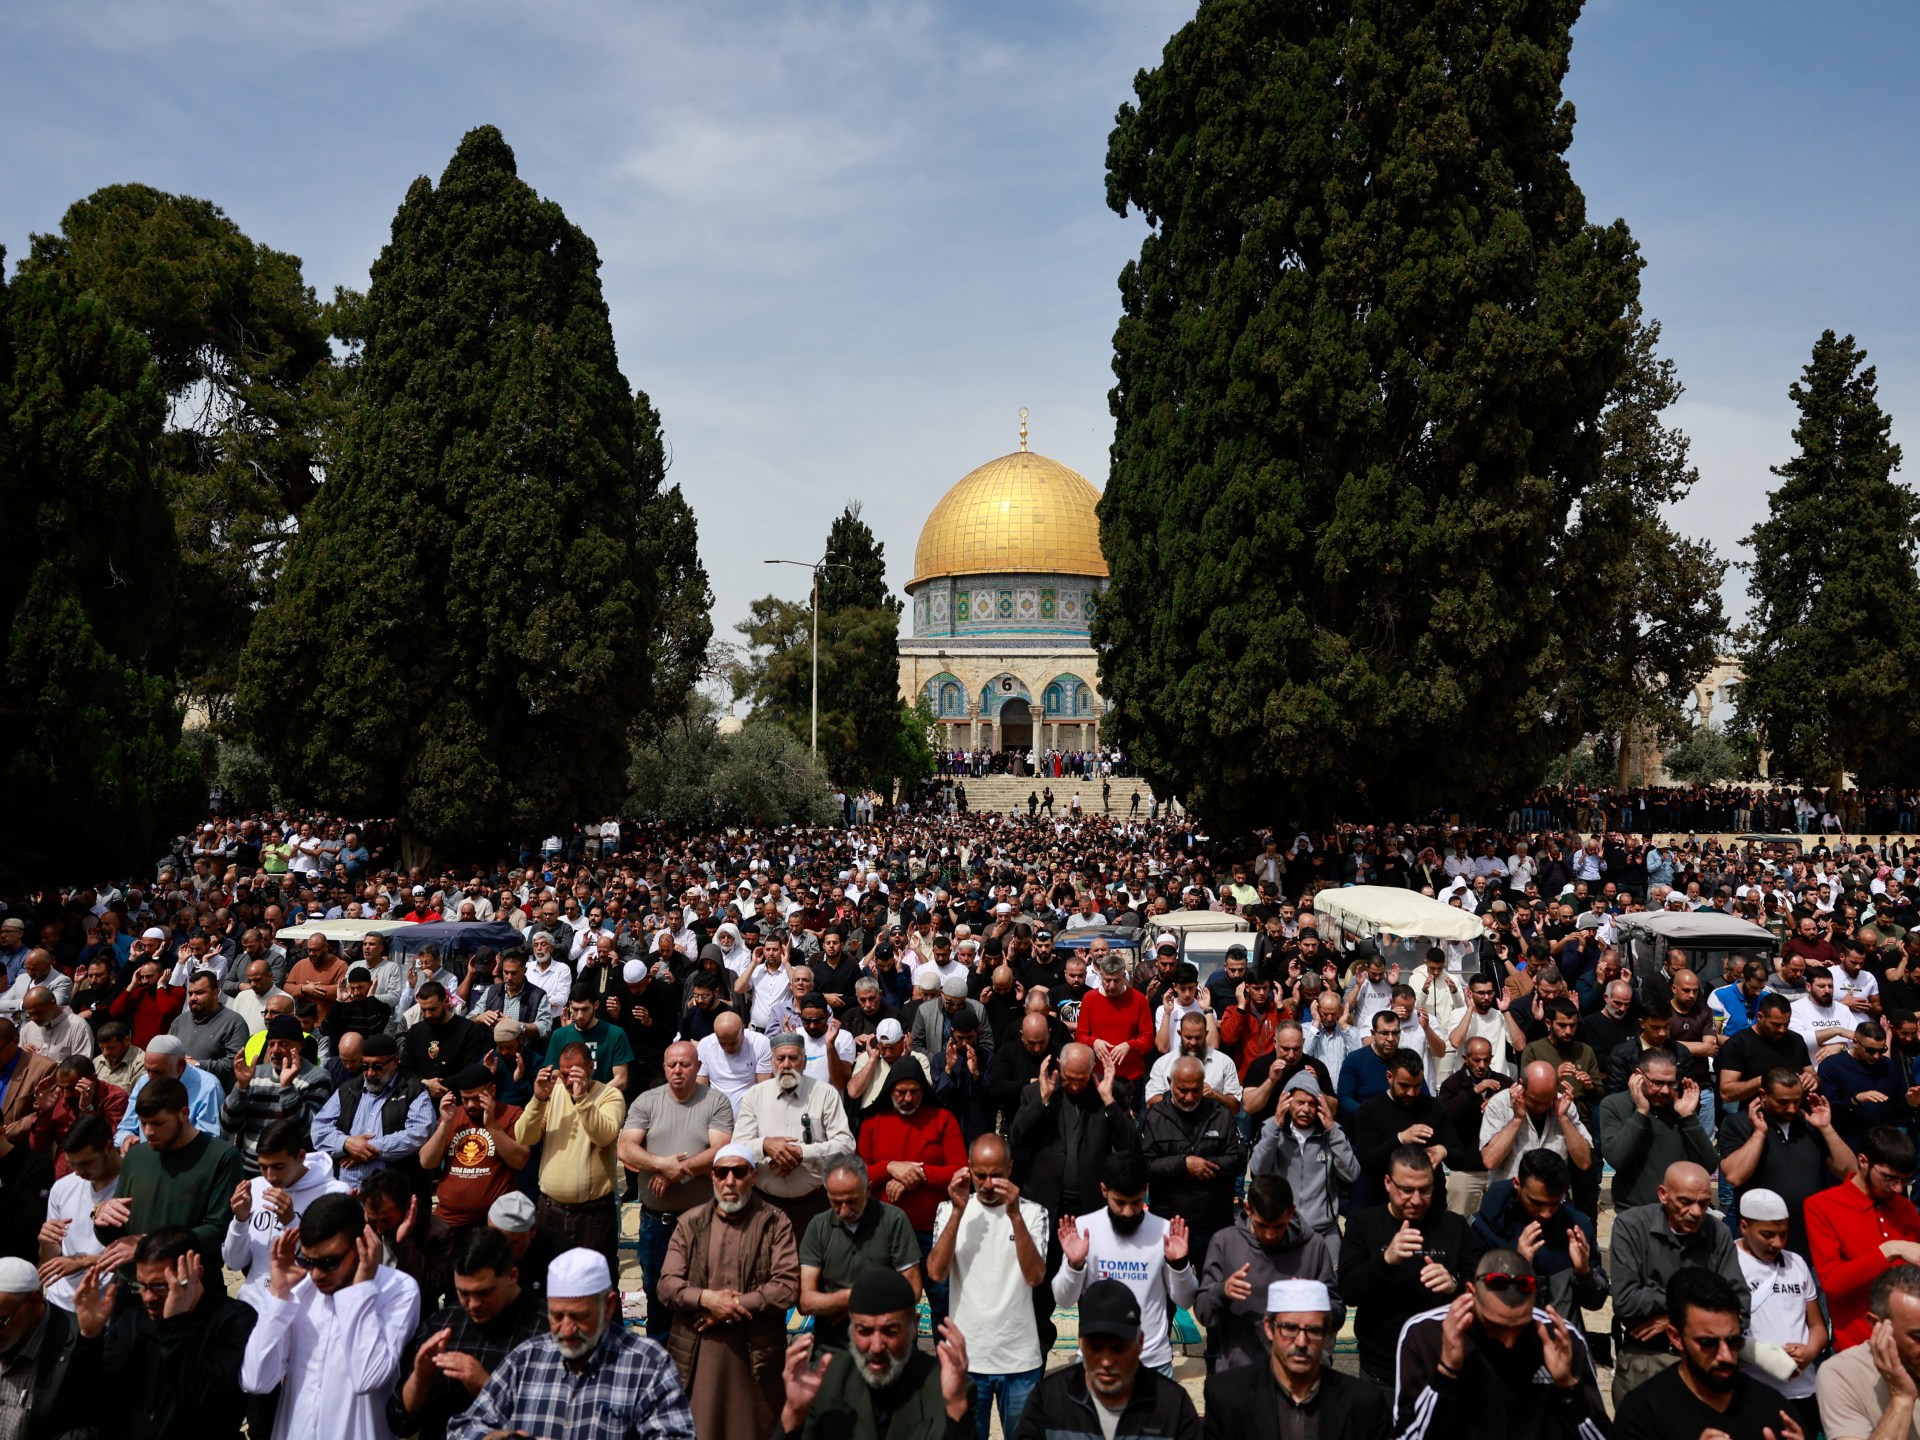 125 ألف فلسطيني يصلون الجمعة الثالثة من رمضان بالأقصى